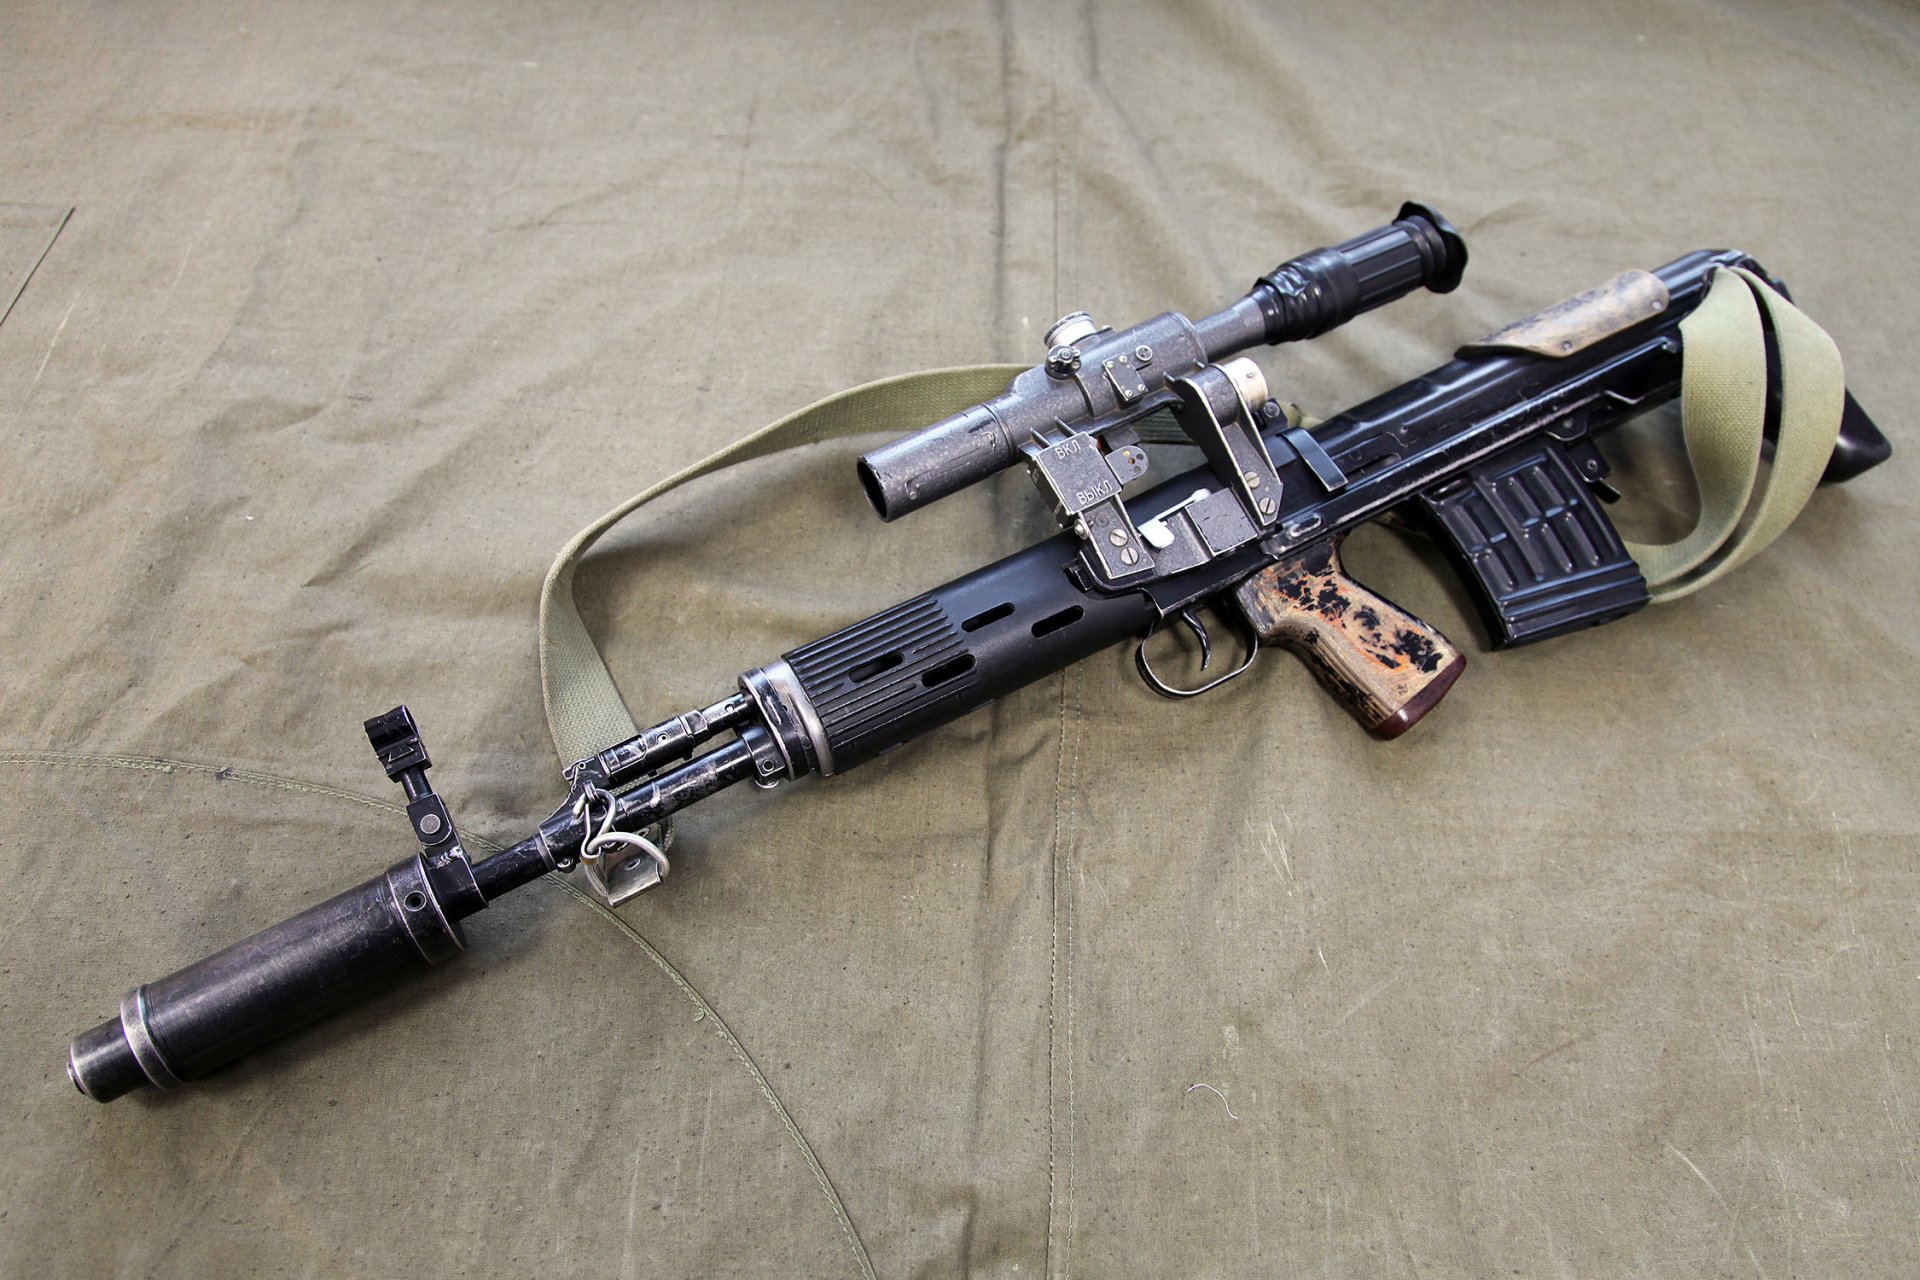 сву-ас самозарядная снайперская винтовка компоновки булл-пап россия оружие